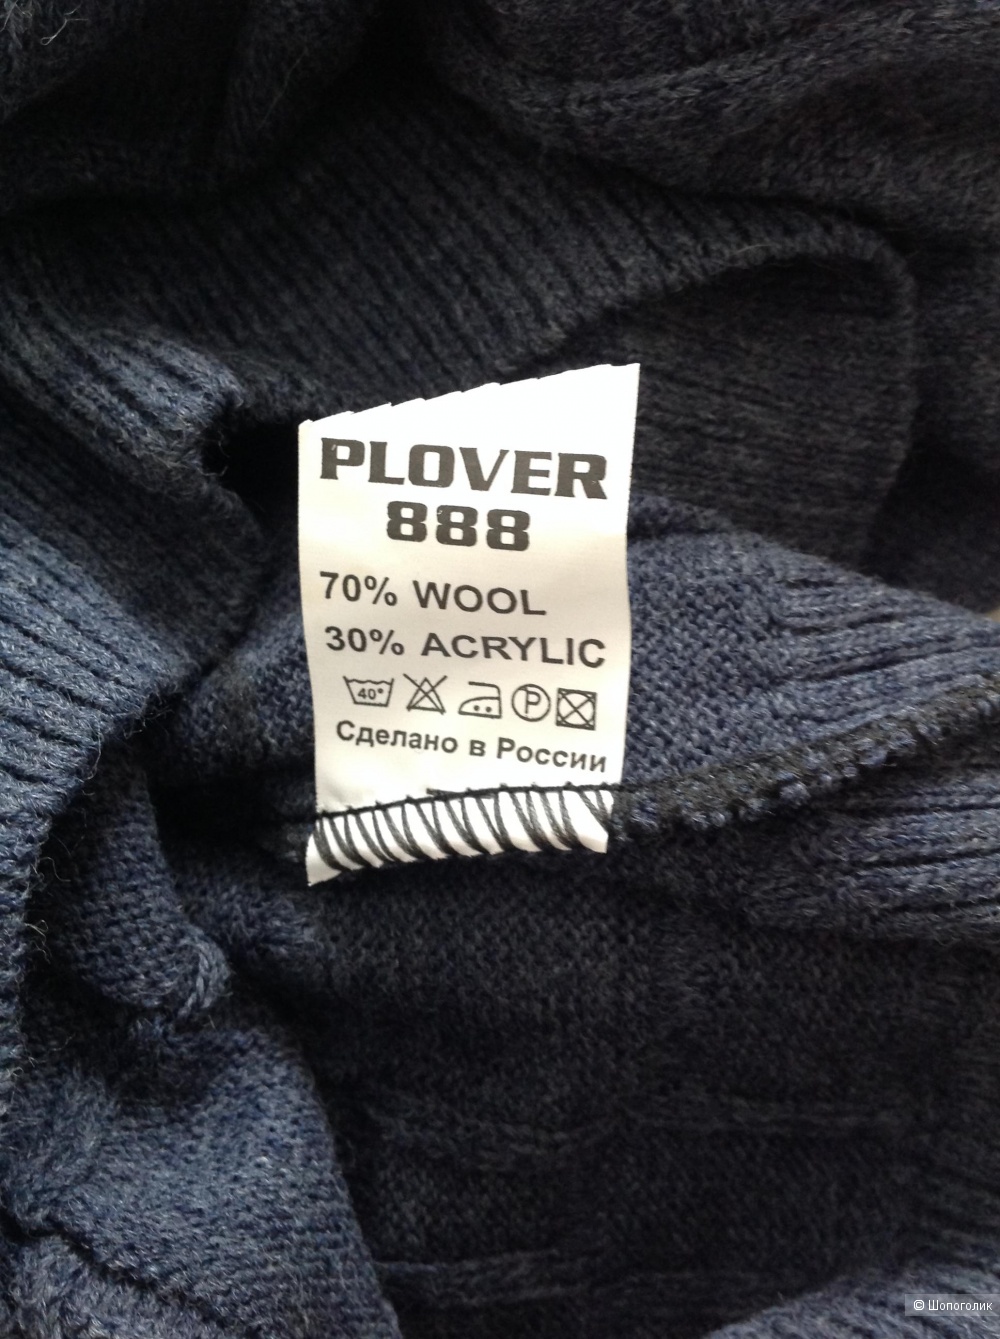 Джемпер Plover 888, размер 56, на 50-52-54